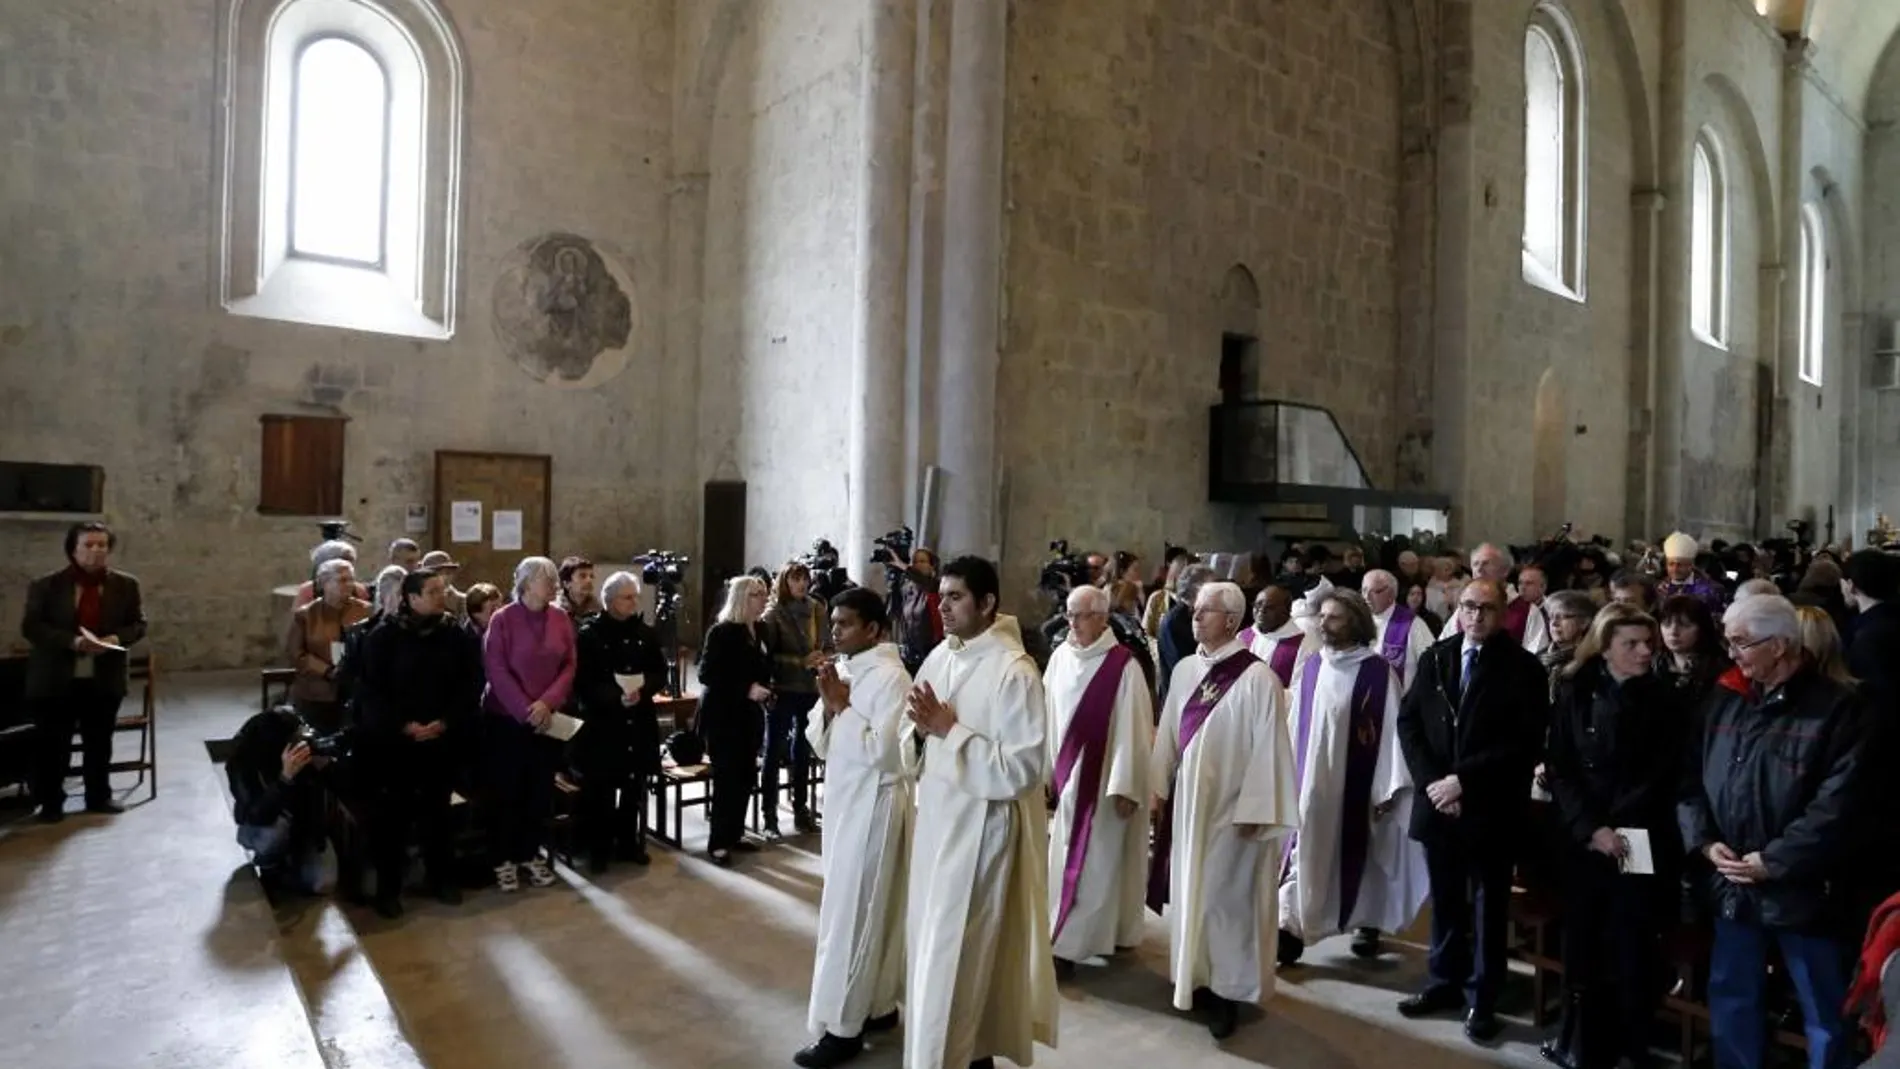 Momento de la ceremonia religiosa en la catedral de Notre Dame de la ciudad de Digne-les-Bains, cercana a la zona donde se estrelló el avión, para honrar a las víctimas